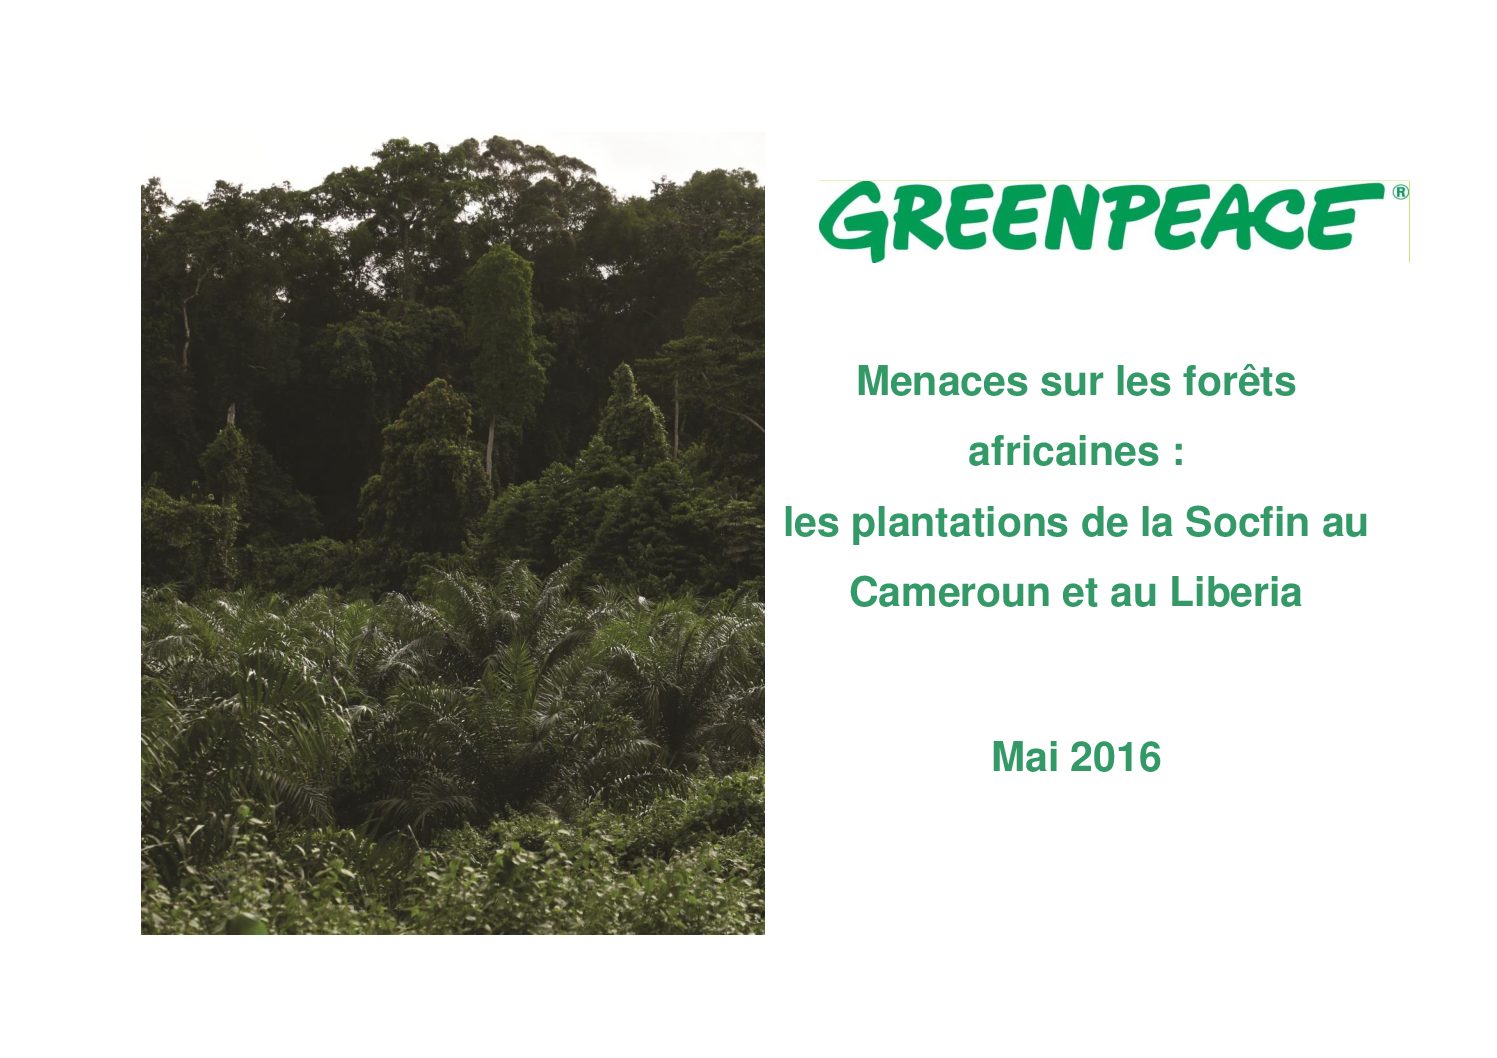 La SOCFIN menace les forêts au Libéria et au Cameroun